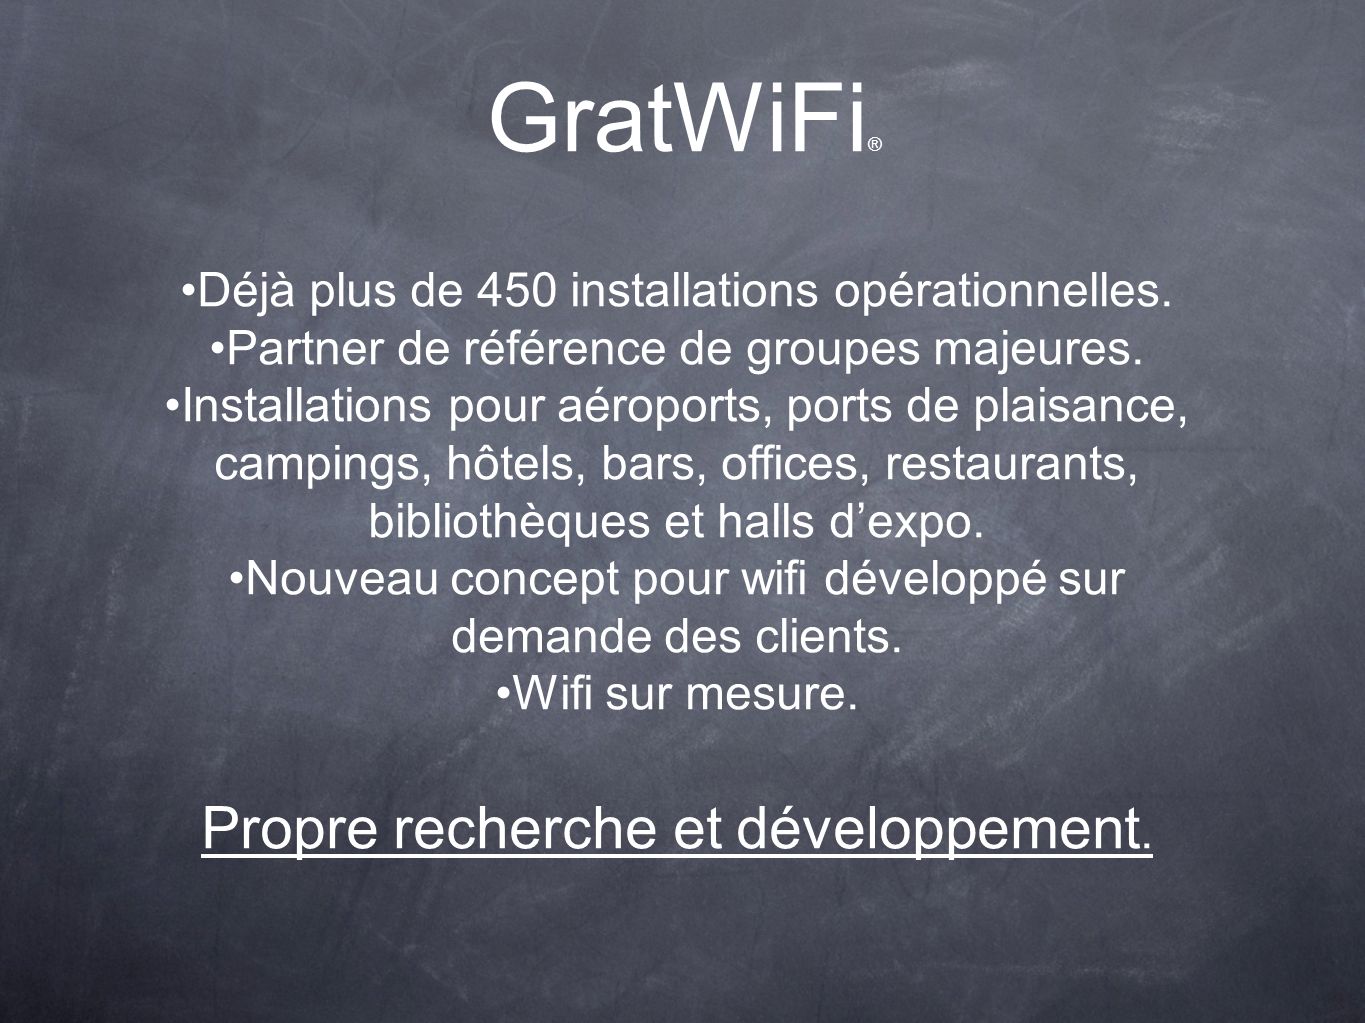 GratWiFi ® Déjà plus de 450 installations opérationnelles.